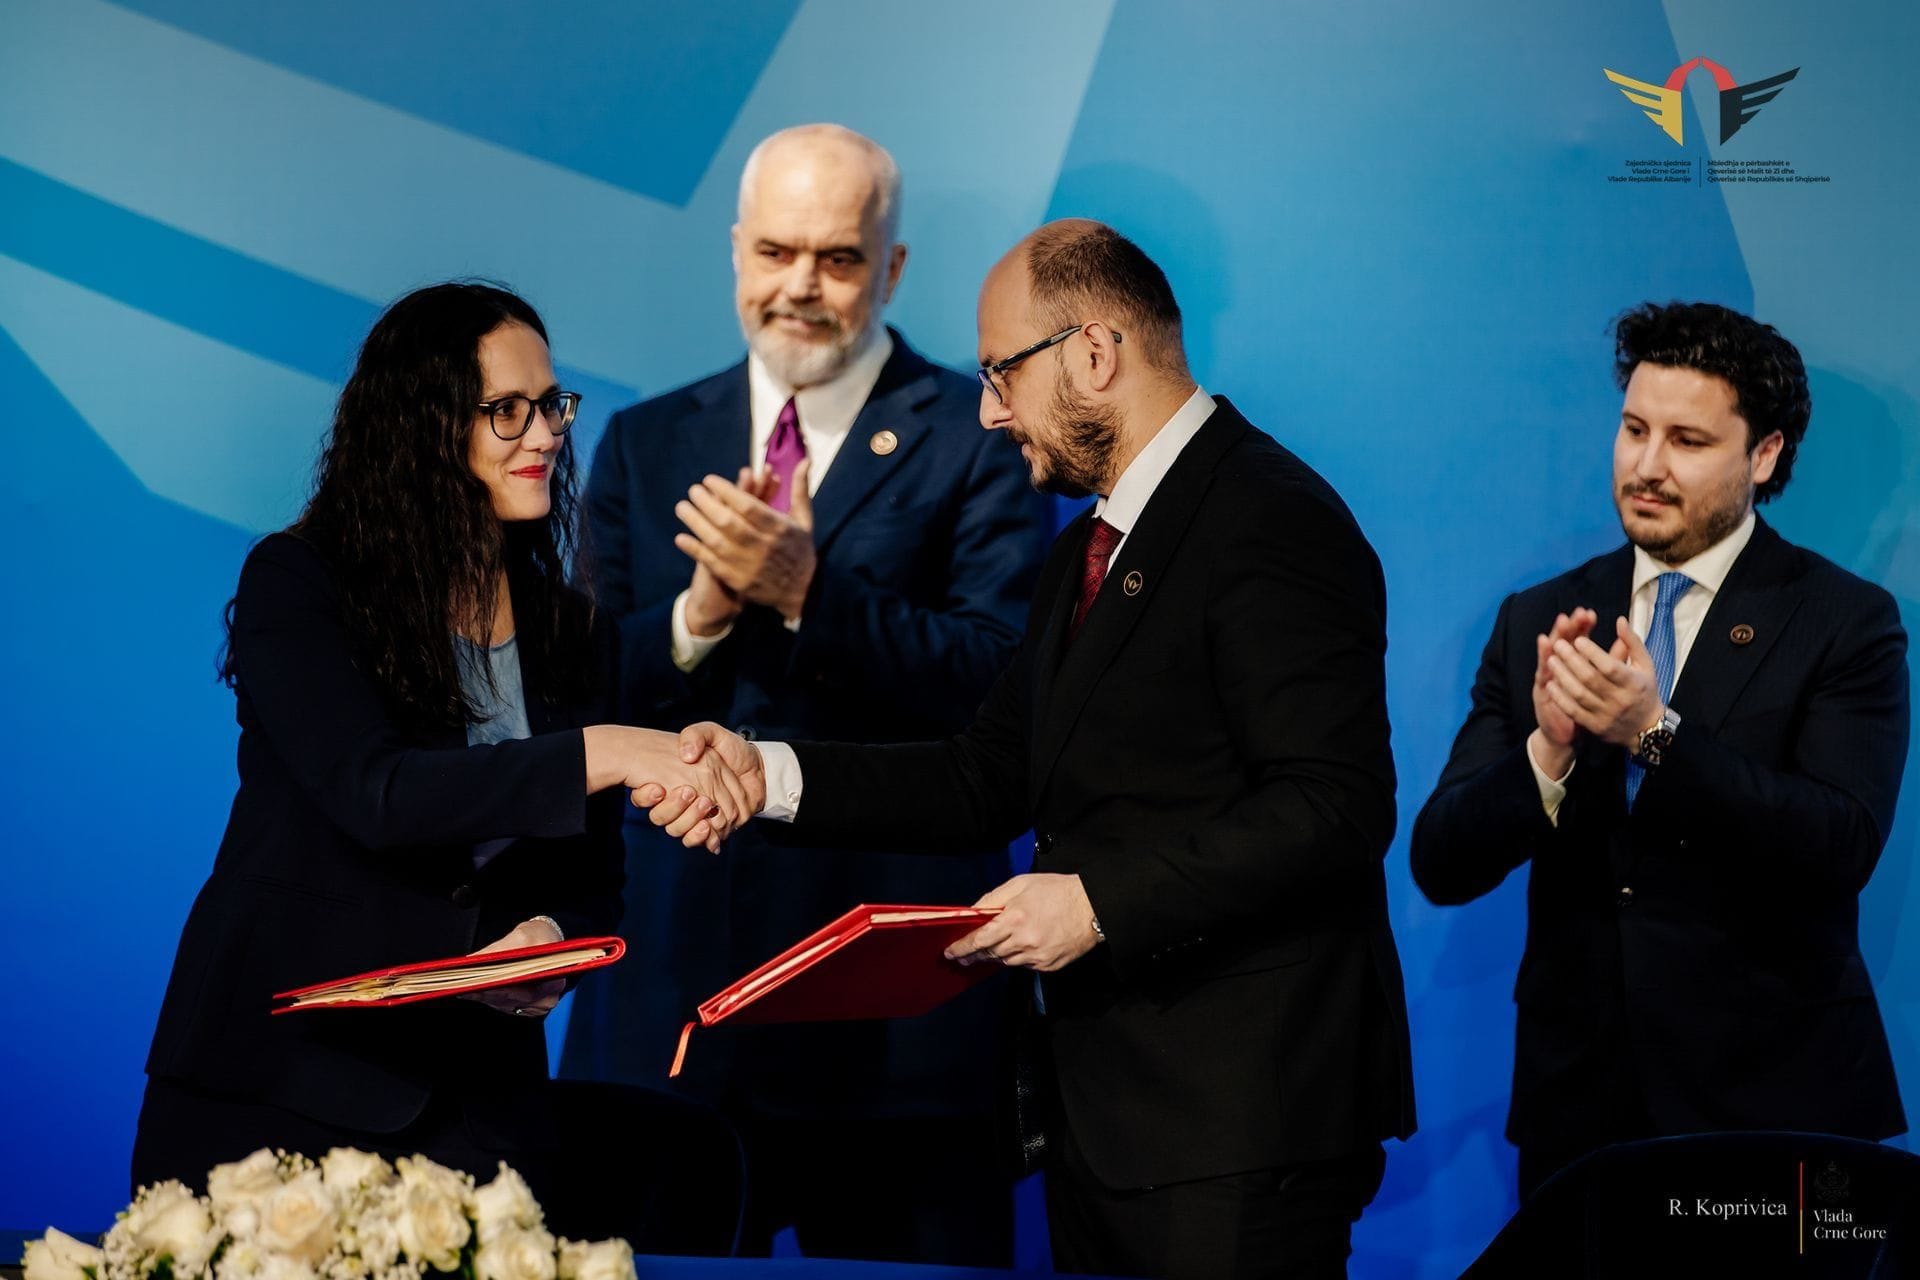 Potpisan Sporazum između Crne Gore i Republike Albanije o socijalnom osiguranju